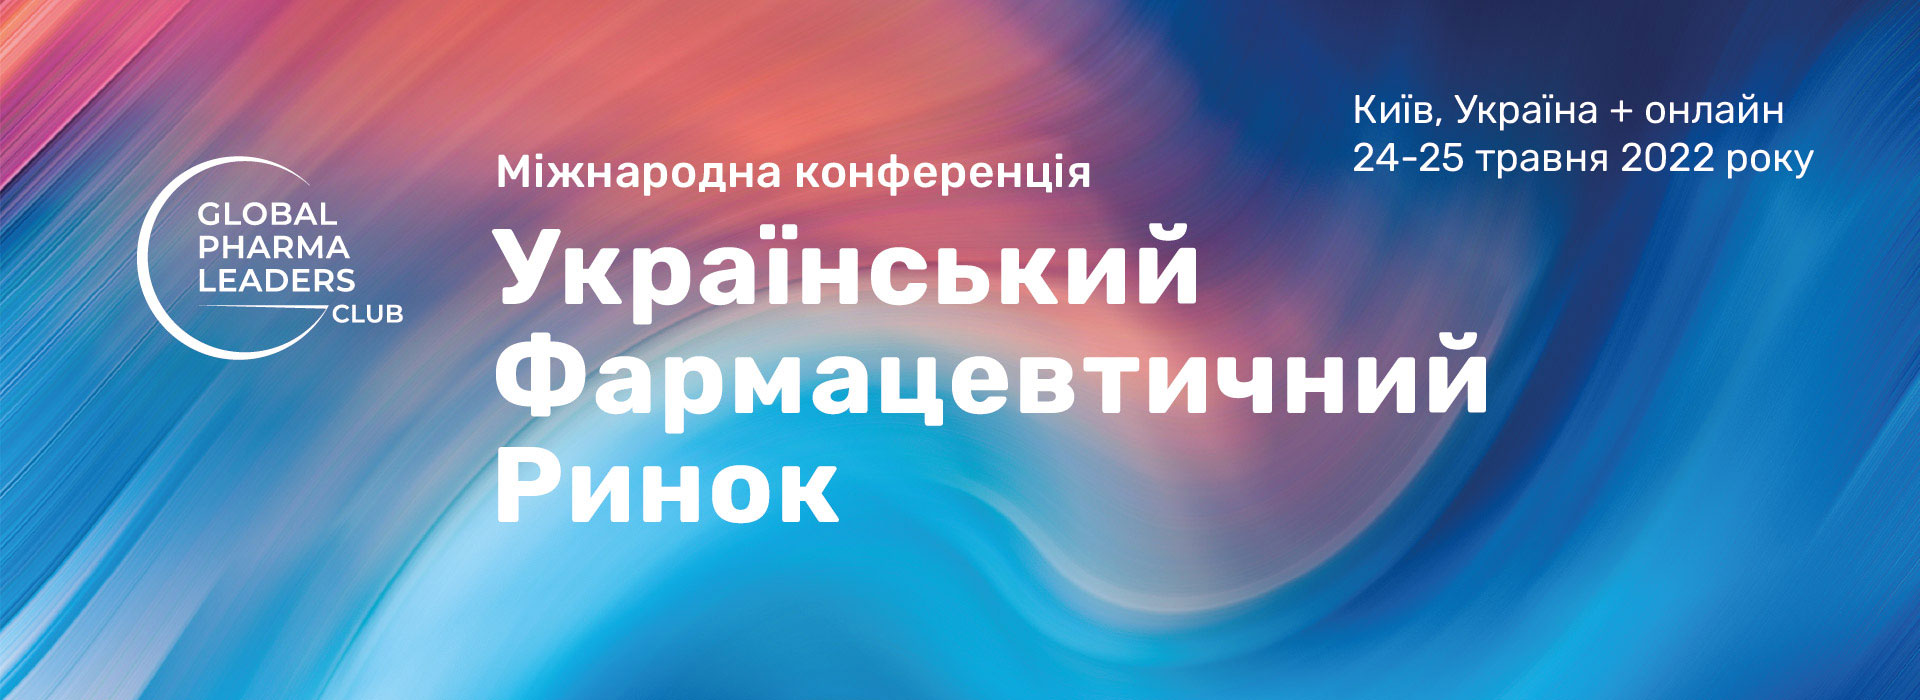 Міжнародна конференція «Український фармацевтичний ринок»